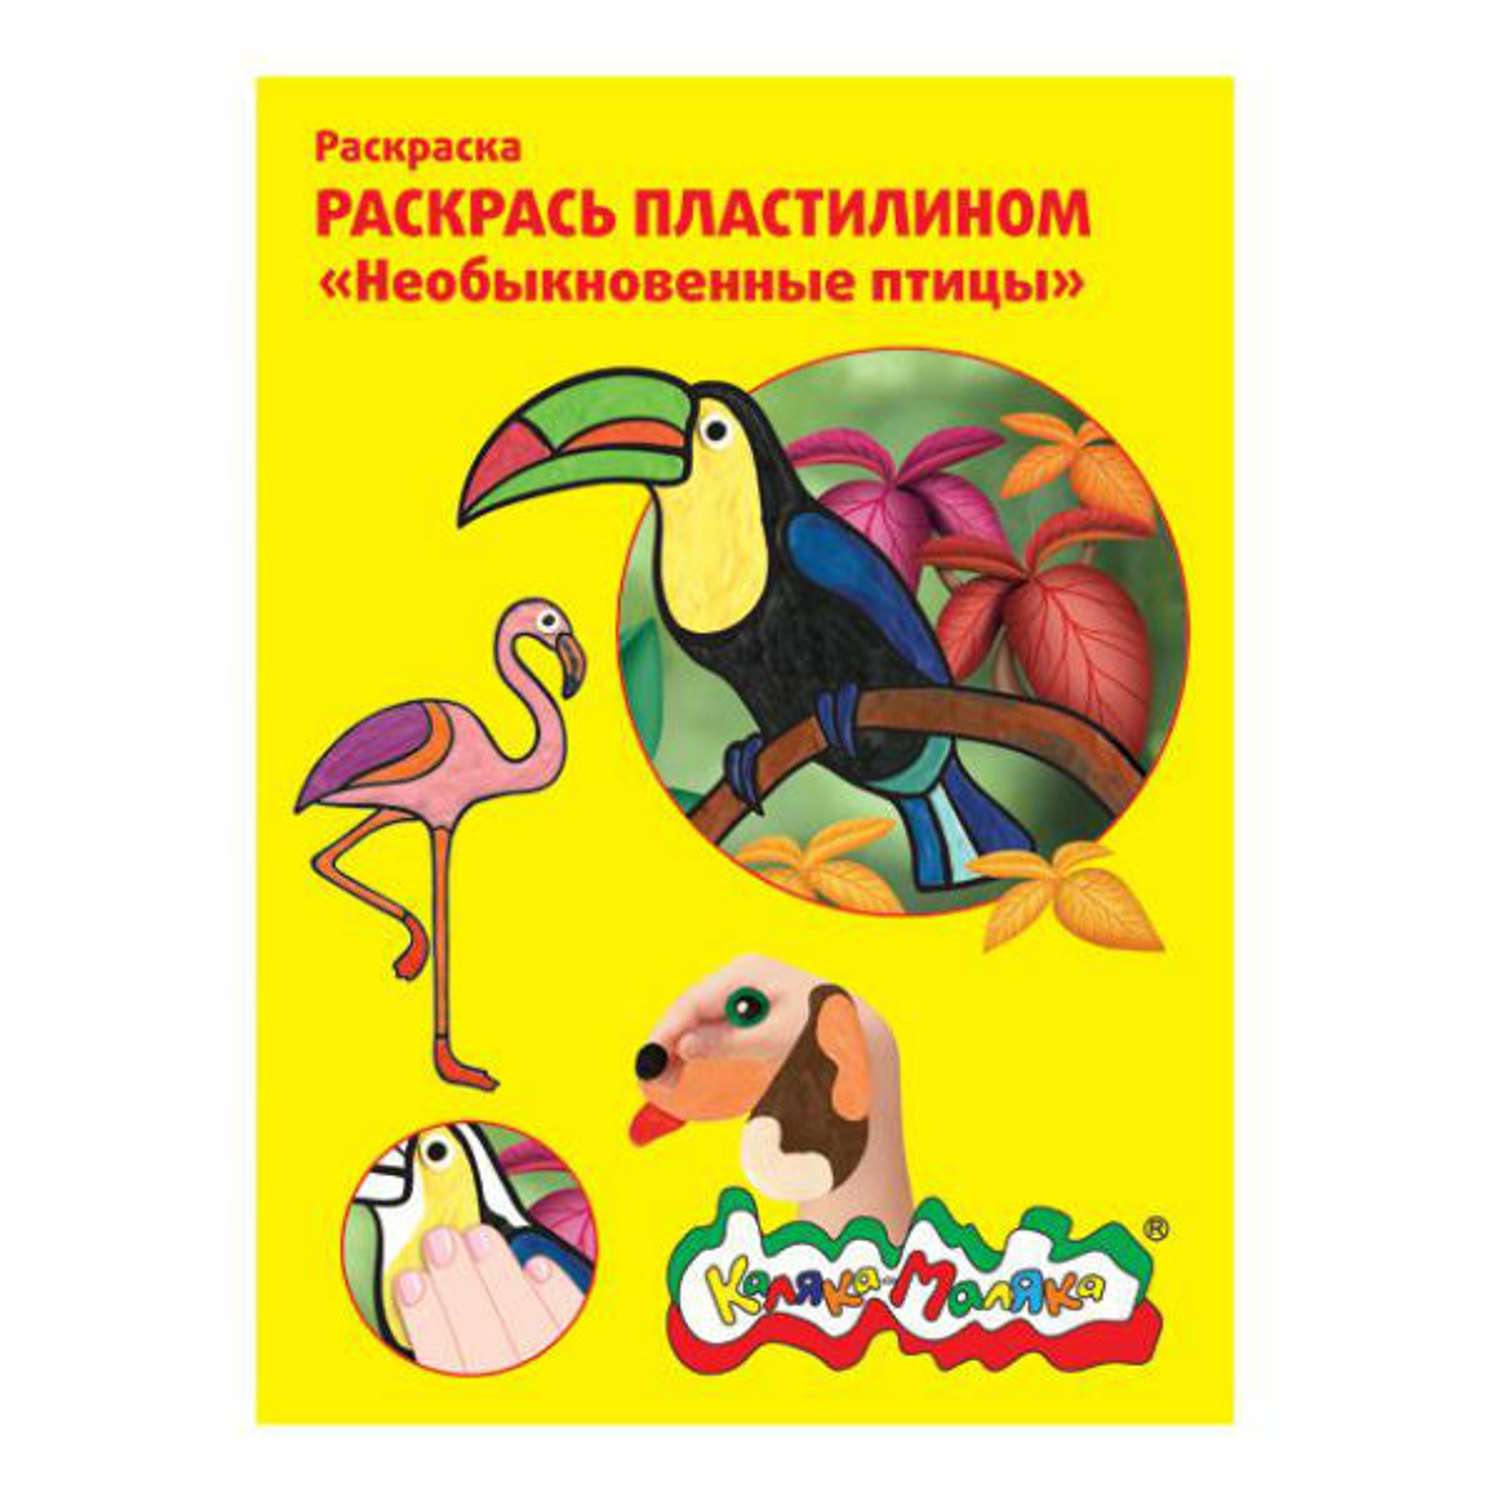 Раскраска пластилином А4 Каляка-Маляка Необыкновенные птицы 4 штуки - фото 1